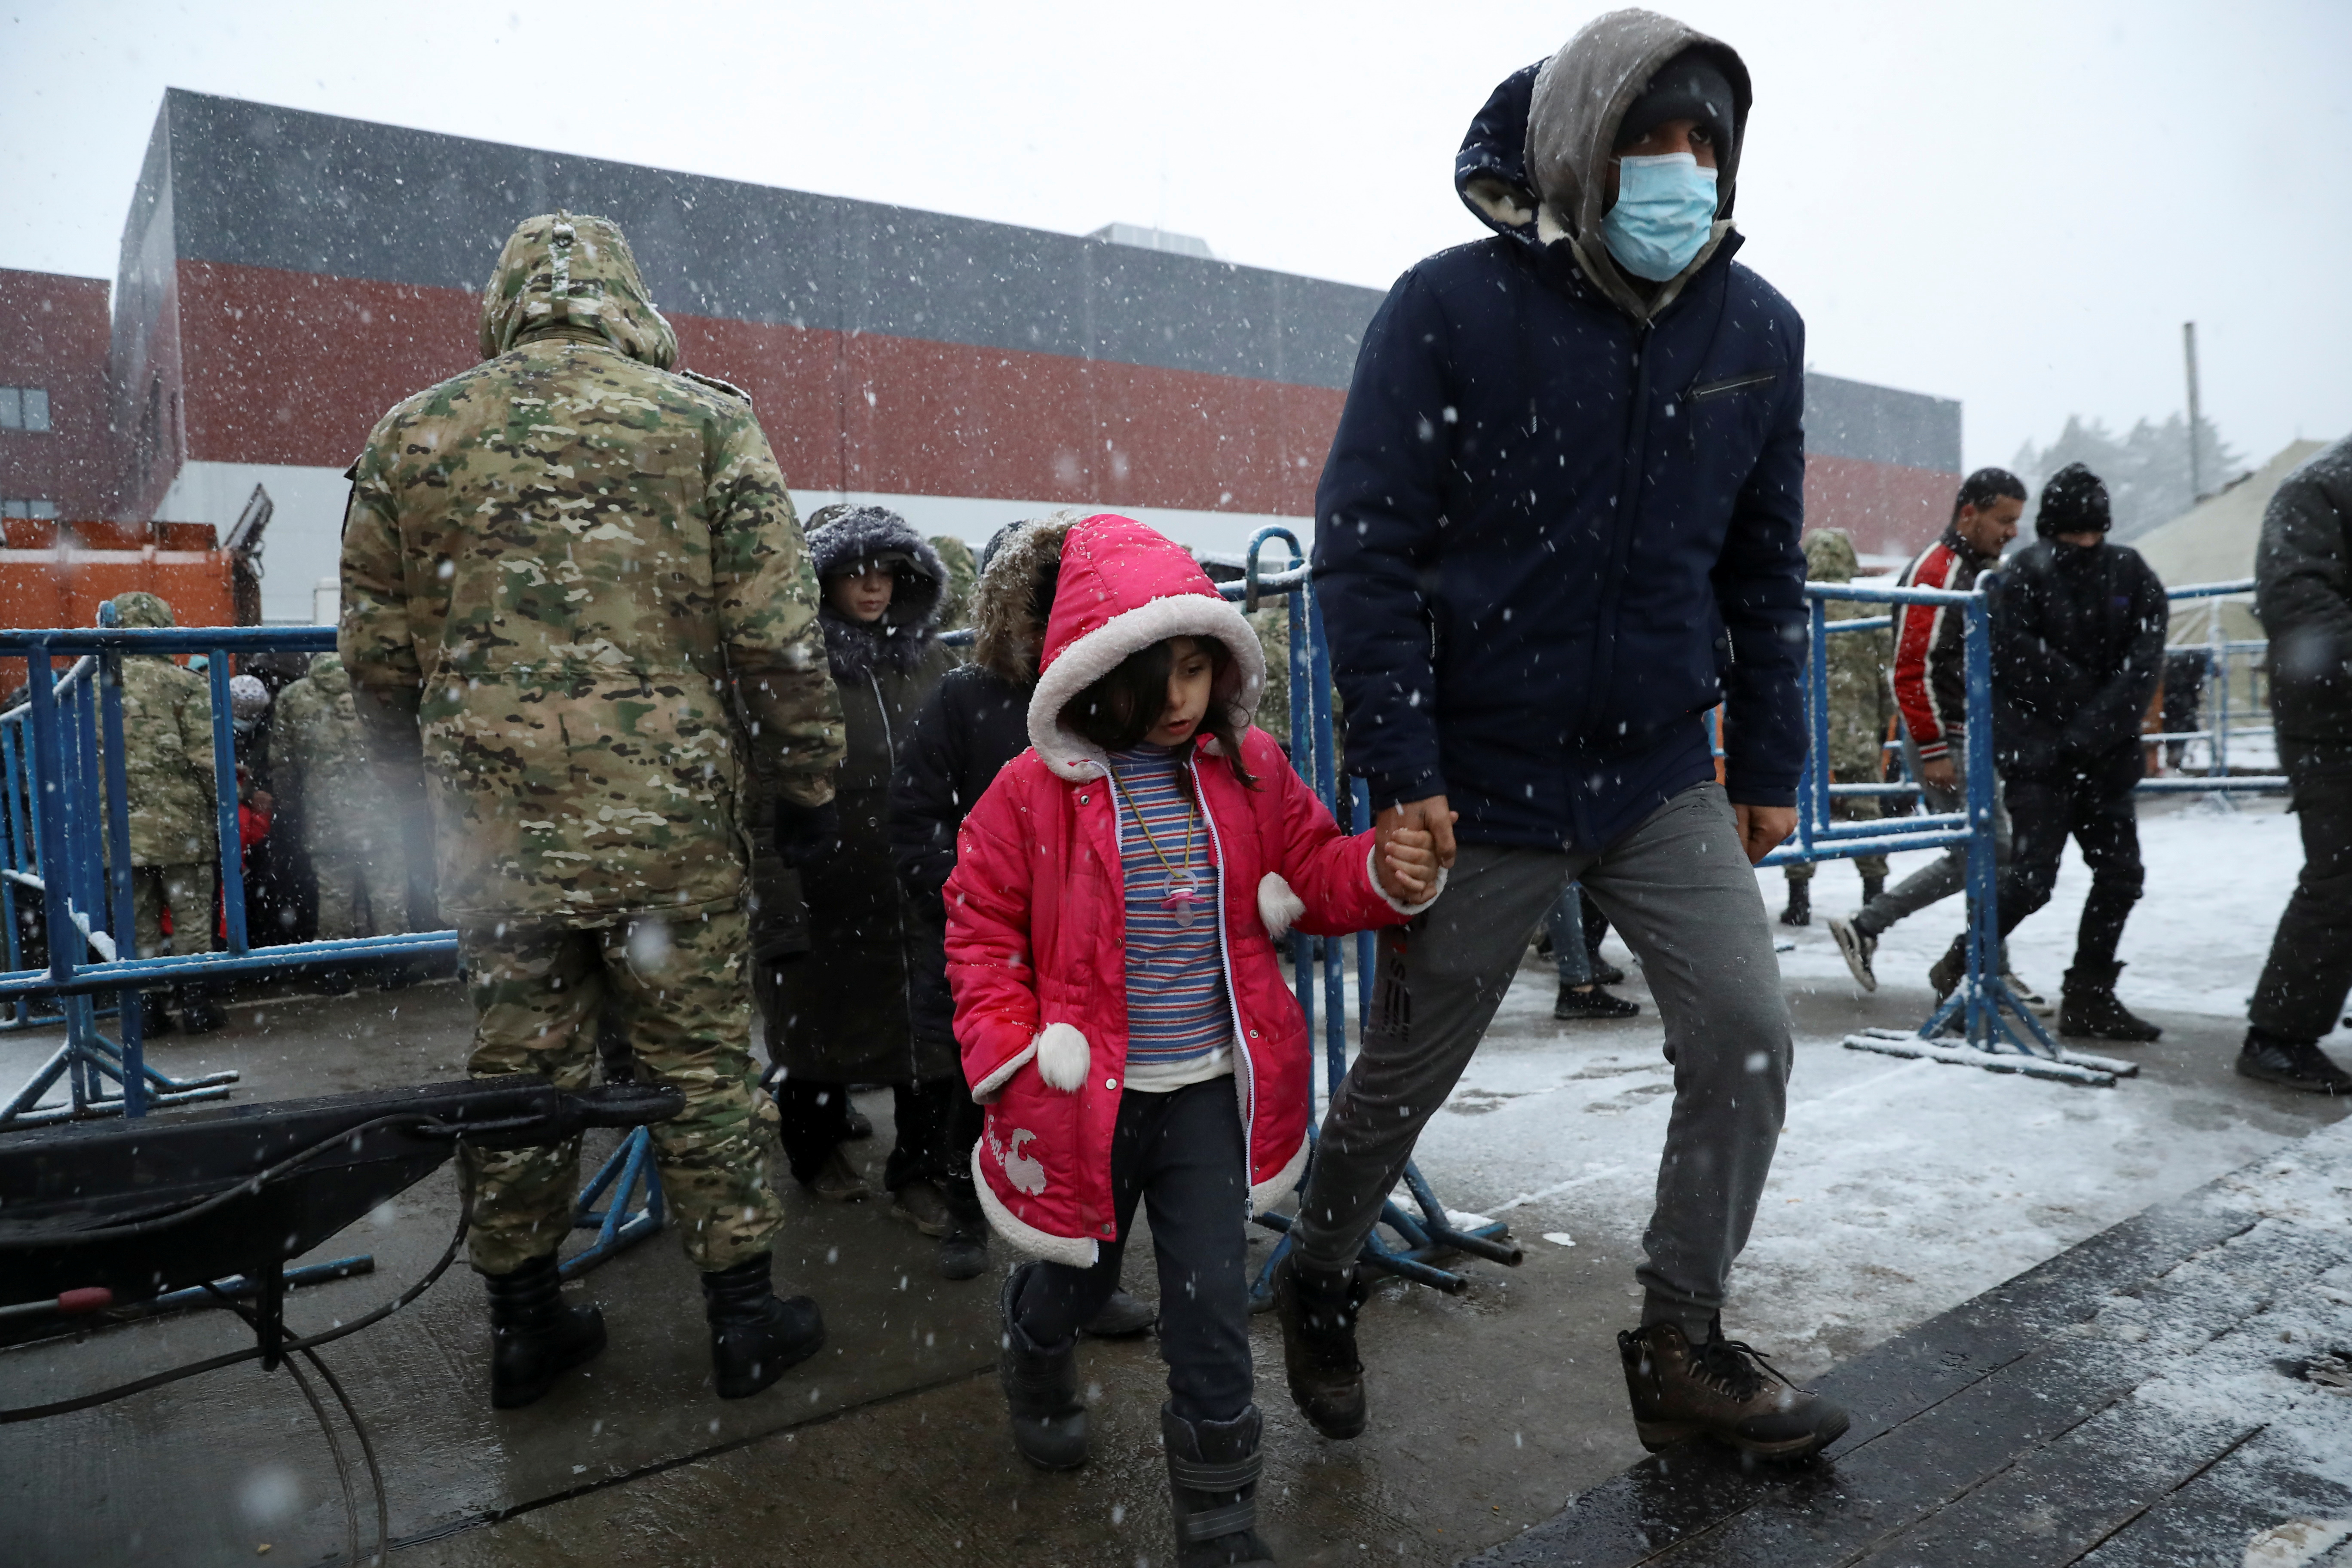 Ένας μετανάστης περπατά με ένα παιδί κατά τη διάρκεια της χιονόπτωσης, σε ένα κέντρο μεταφορών και υλικοτεχνικής υποστήριξης κοντά στα σύνορα Λευκορωσίας-Πολωνίας, στην περιοχή Γκρόντνο, Λευκορωσία, 23 Νοεμβρίου 2021. REUTERS/Kacper Pempel